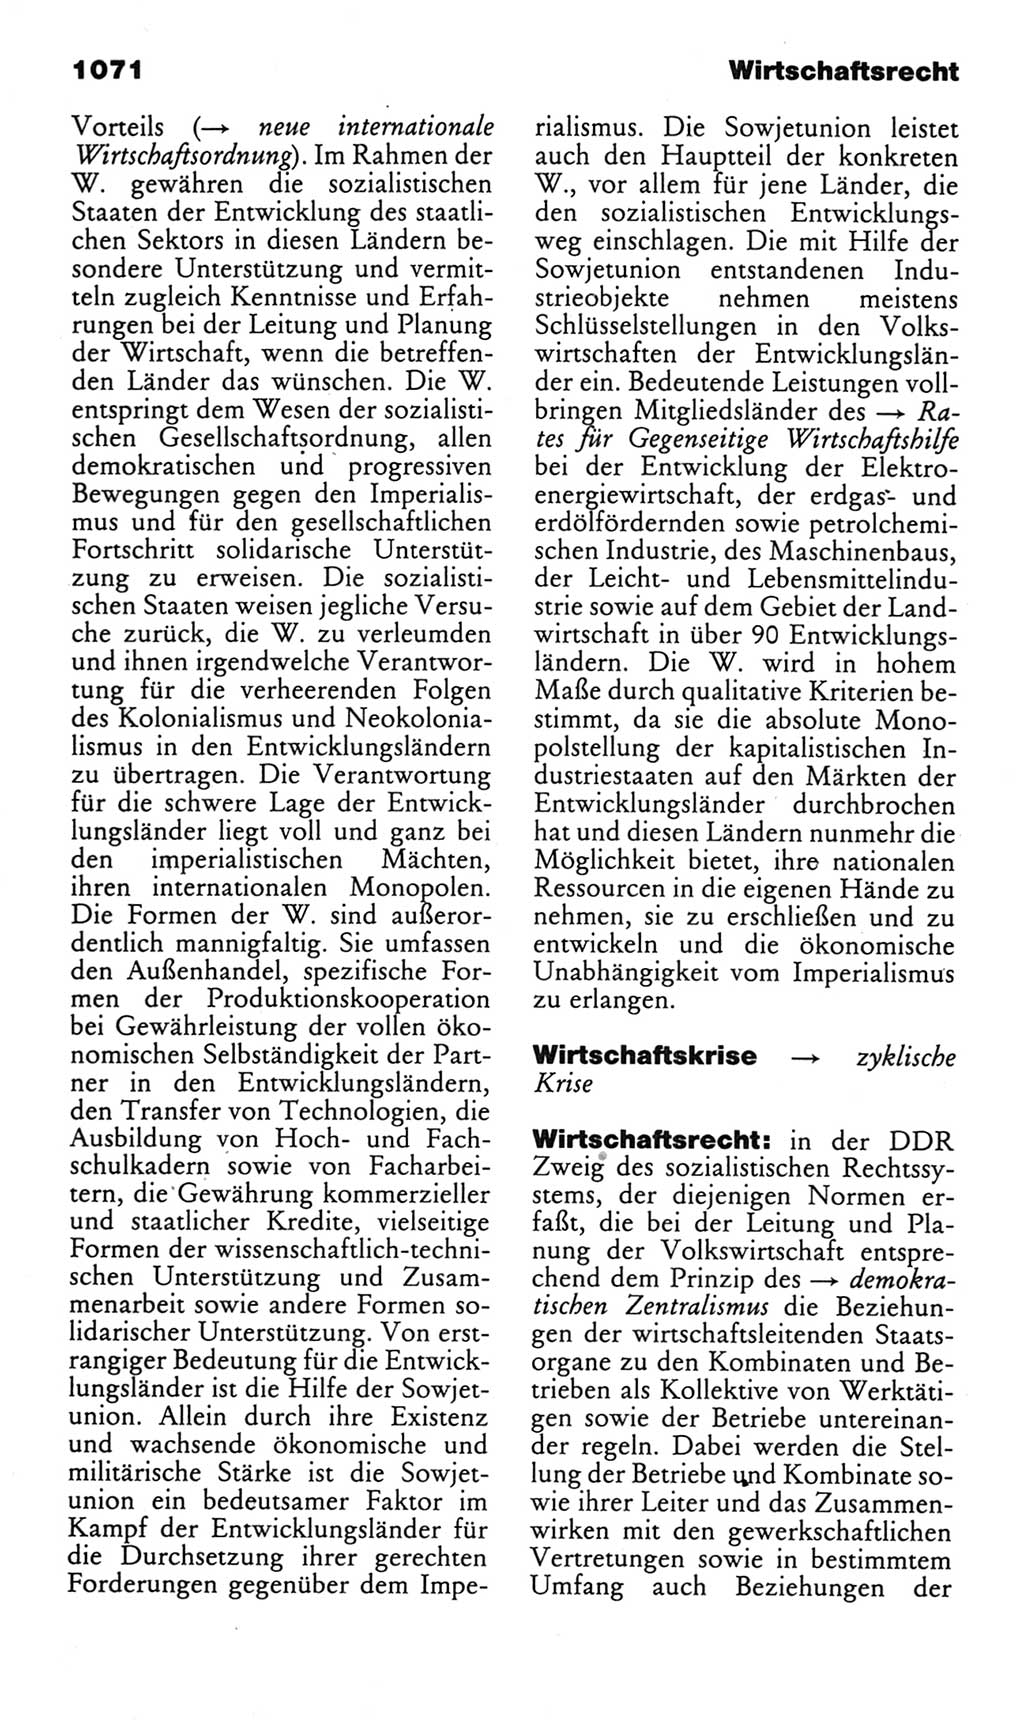 Kleines politisches Wörterbuch [Deutsche Demokratische Republik (DDR)] 1985, Seite 1071 (Kl. pol. Wb. DDR 1985, S. 1071)